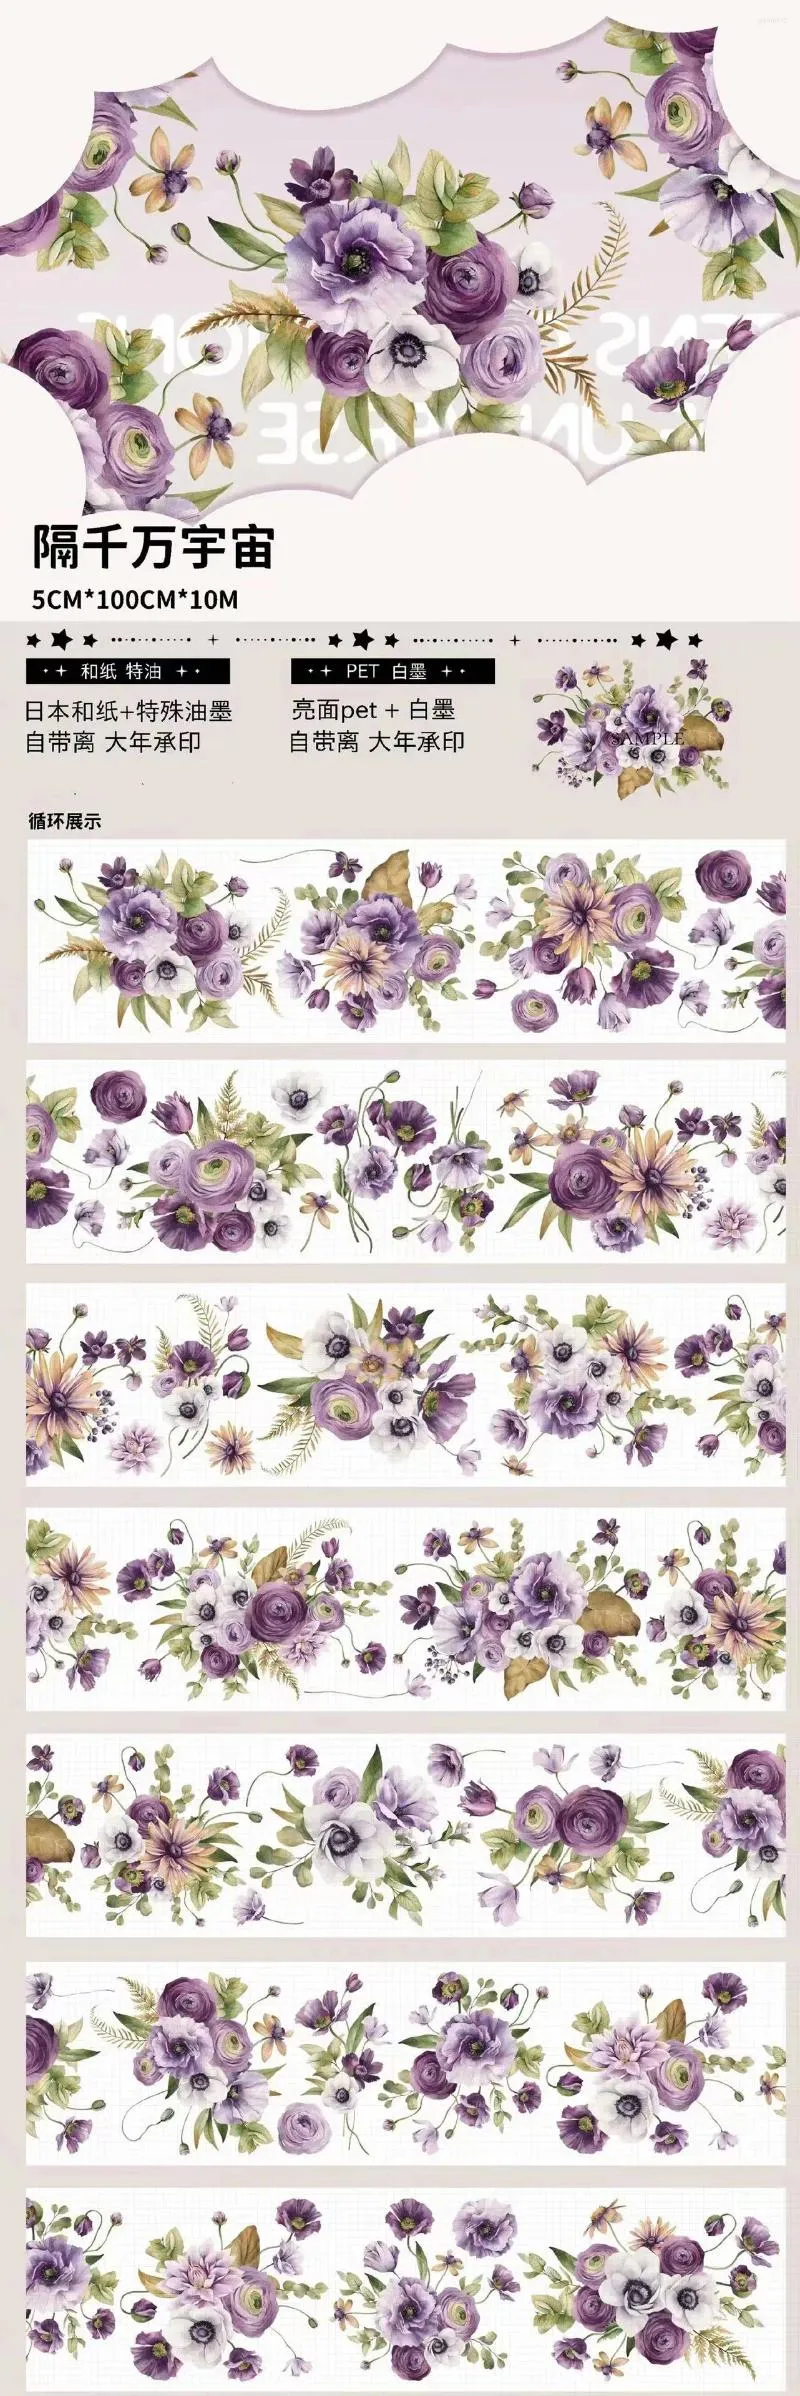 Geschenkverpackung Vintage White Purple Rose Floral Washi Haustier für Kartenherstellung DIY Scrapbooking Plan Dekoratives Aufkleber